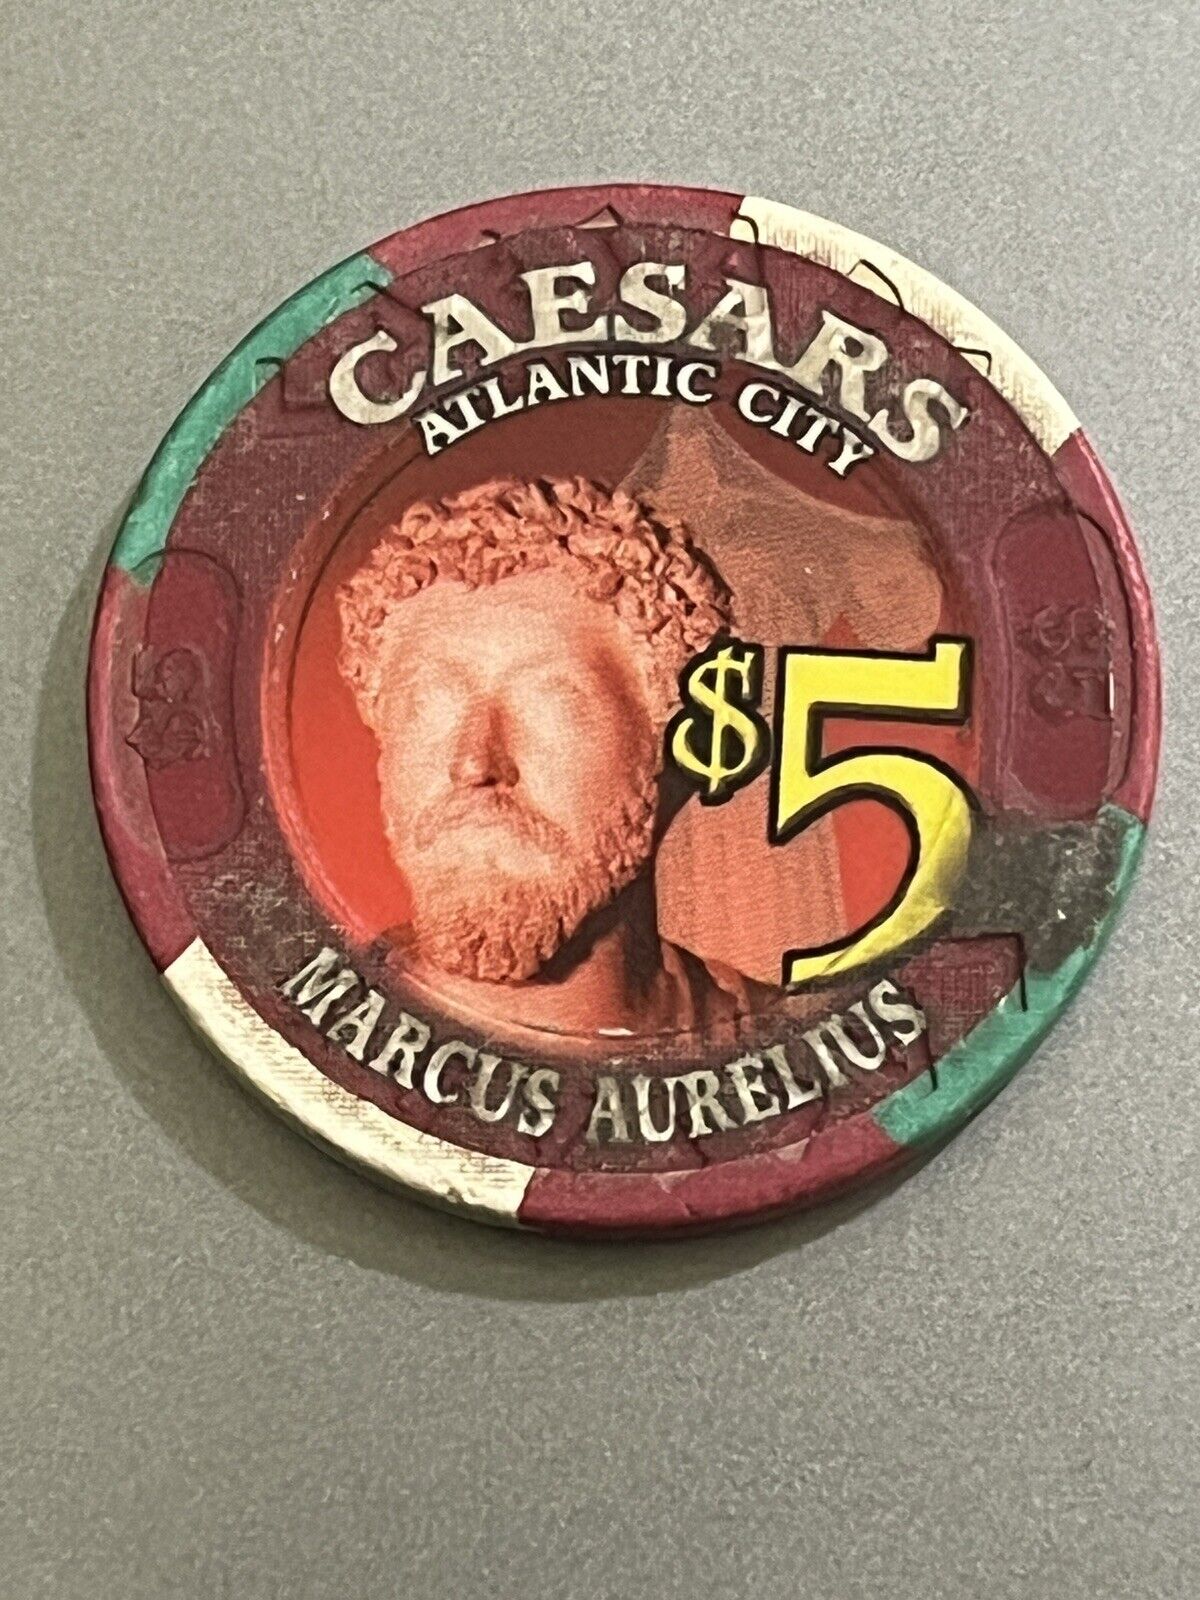 Caesars Atlantic City NJ $5 Five Casino Chip Roman Emperor Marcus Aurelius Vtg